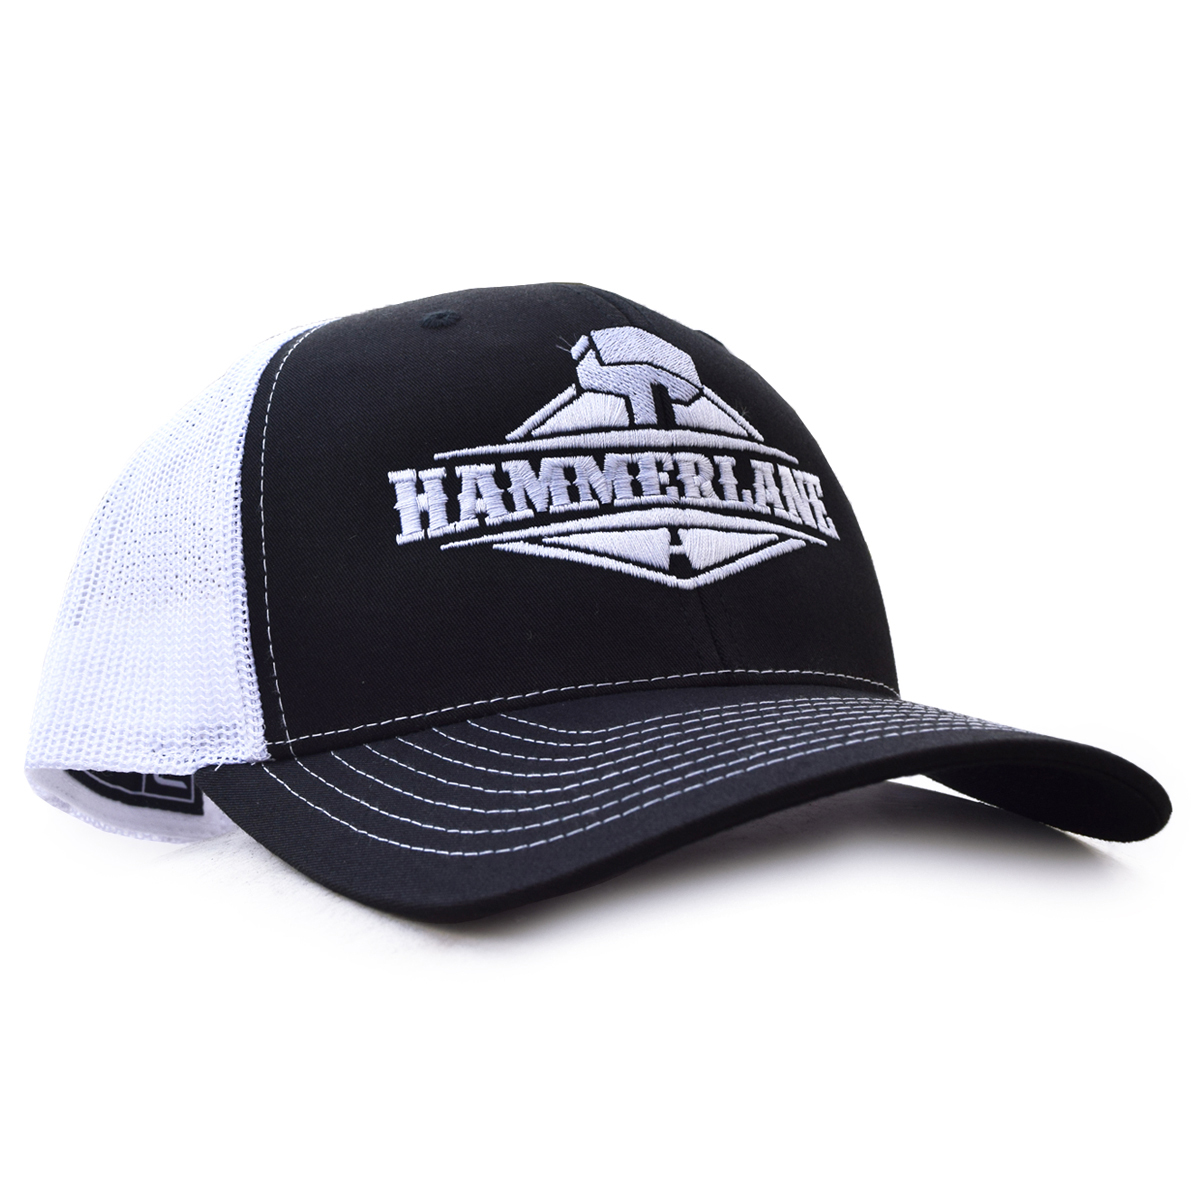 Hammerlane Trucker Cap  Black/White